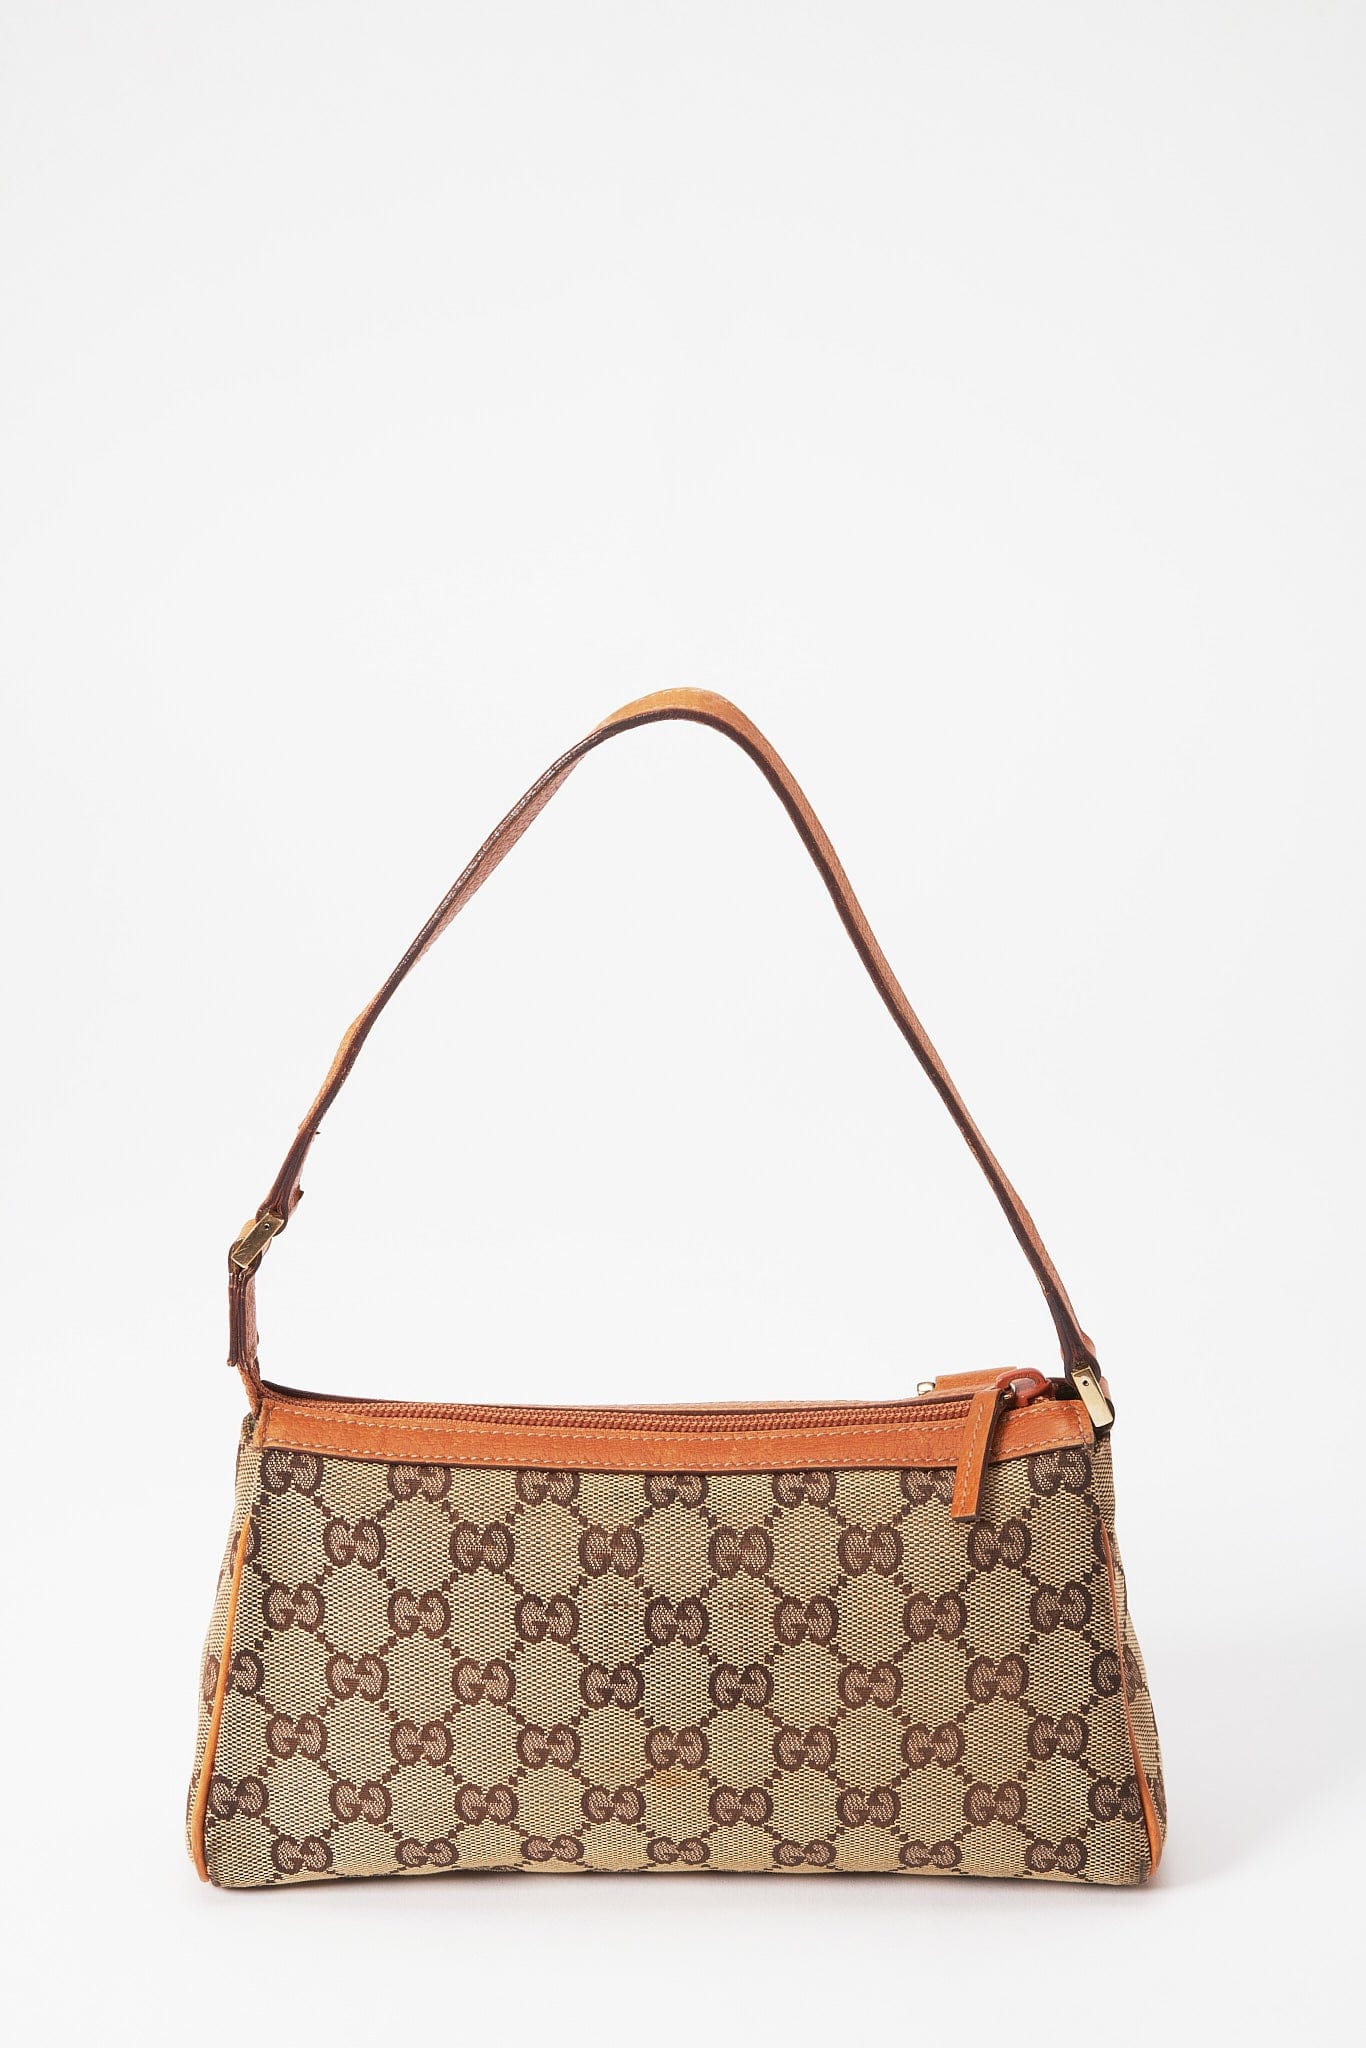 Vintage Gucci Pochette Style Shoulder Bag